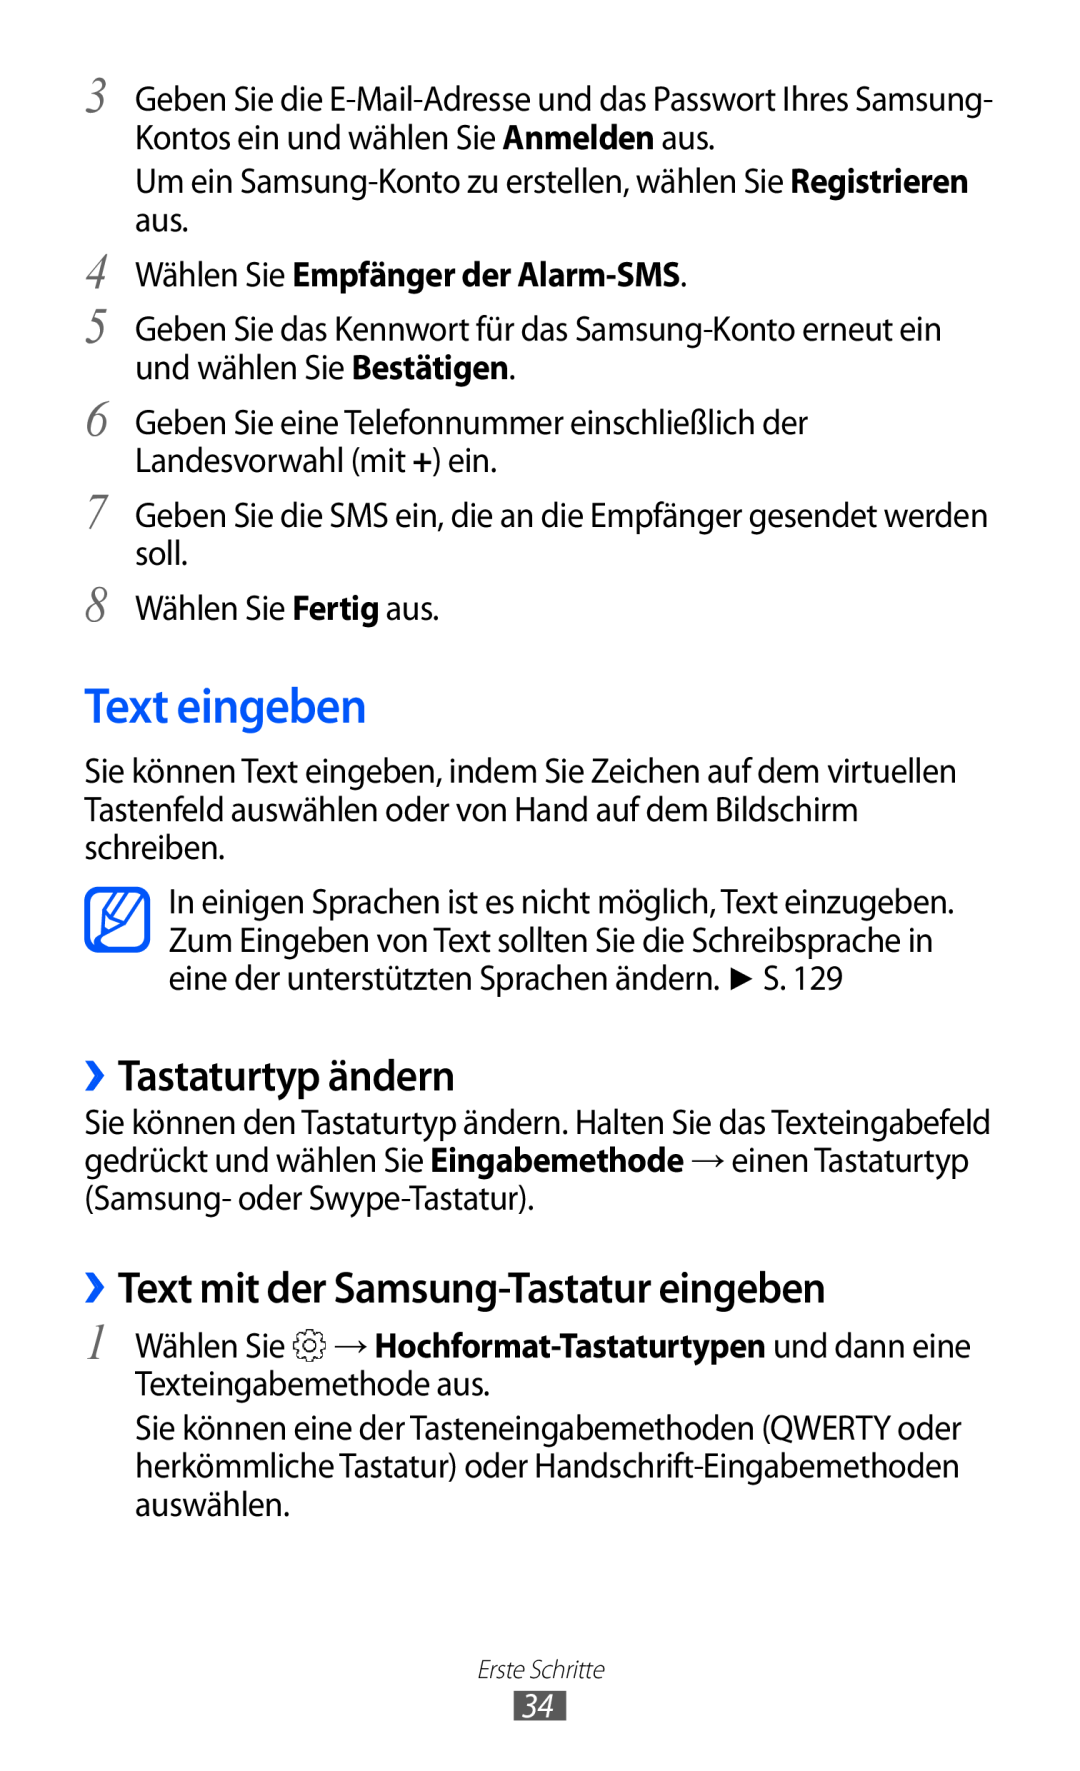 Samsung GT-S6500XKADBT, GT-S6500RWDTUR manual Text eingeben, ››Tastaturtyp ändern, ››Text mit der Samsung-Tastatur eingeben 